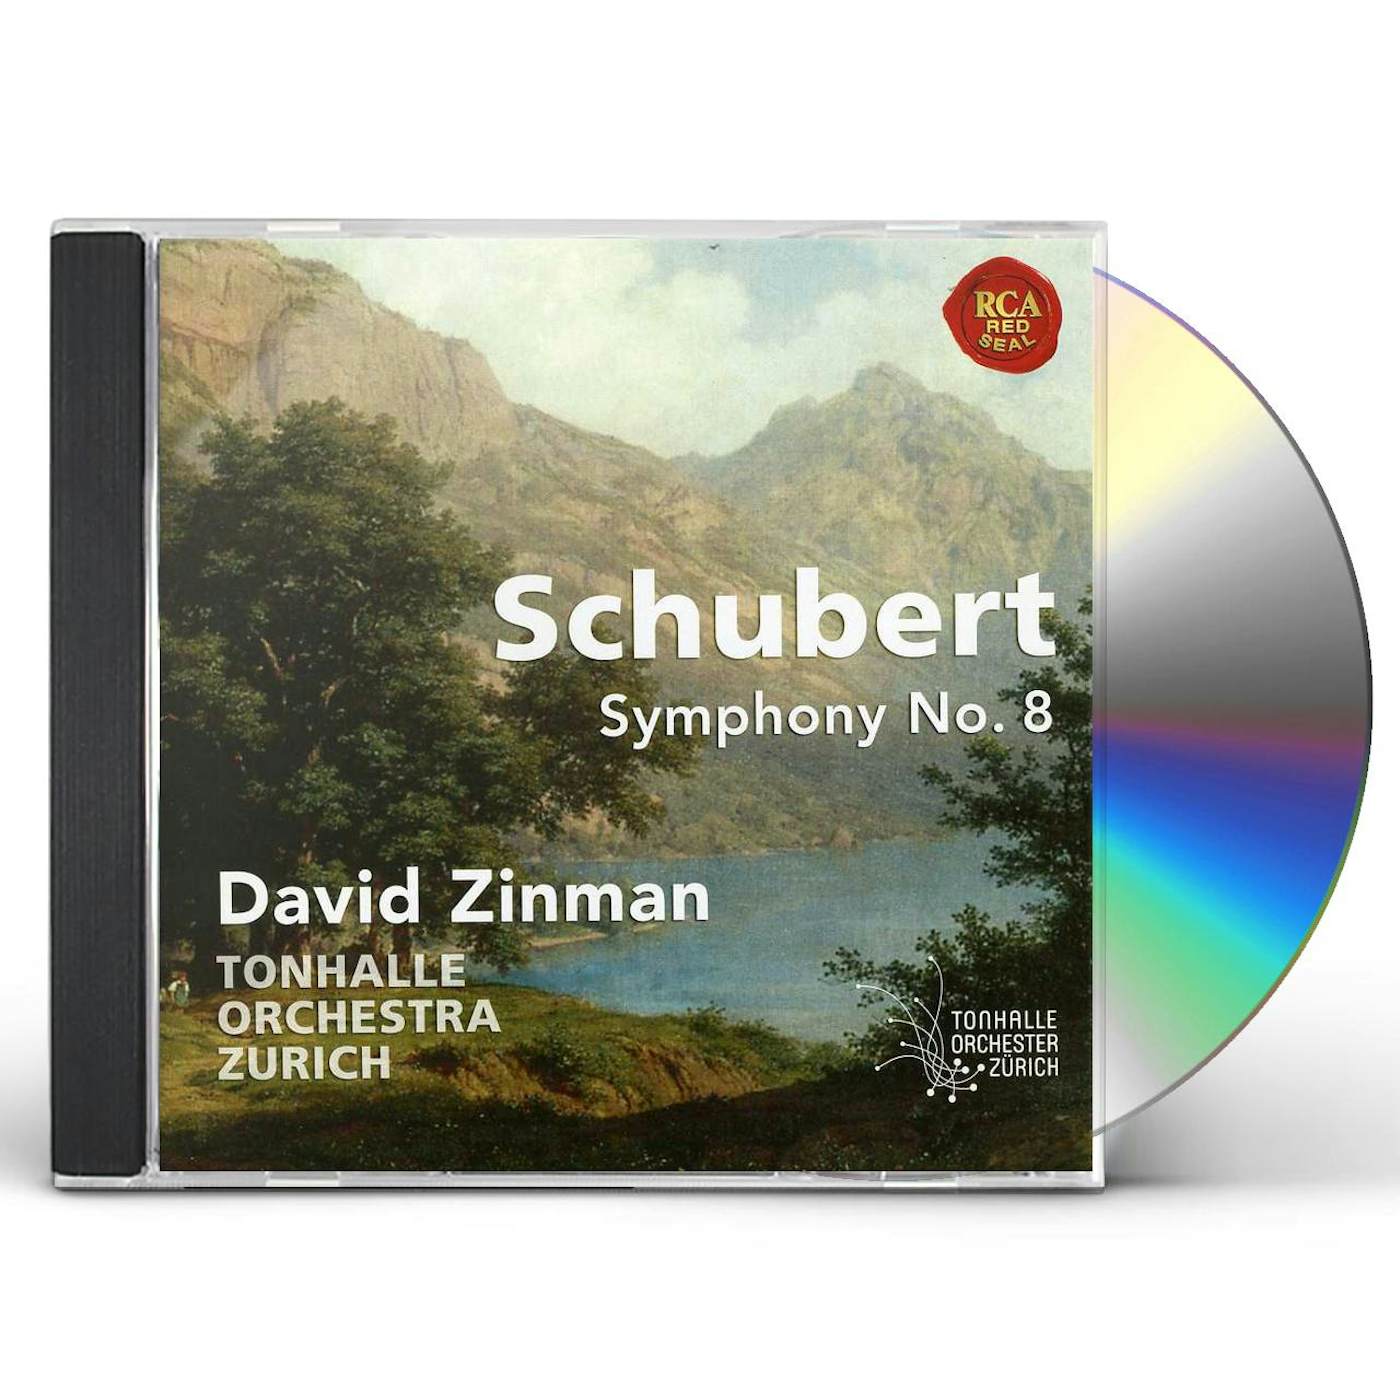 David Zinman SCHUBERT: SYMPHONY NO.8 CD